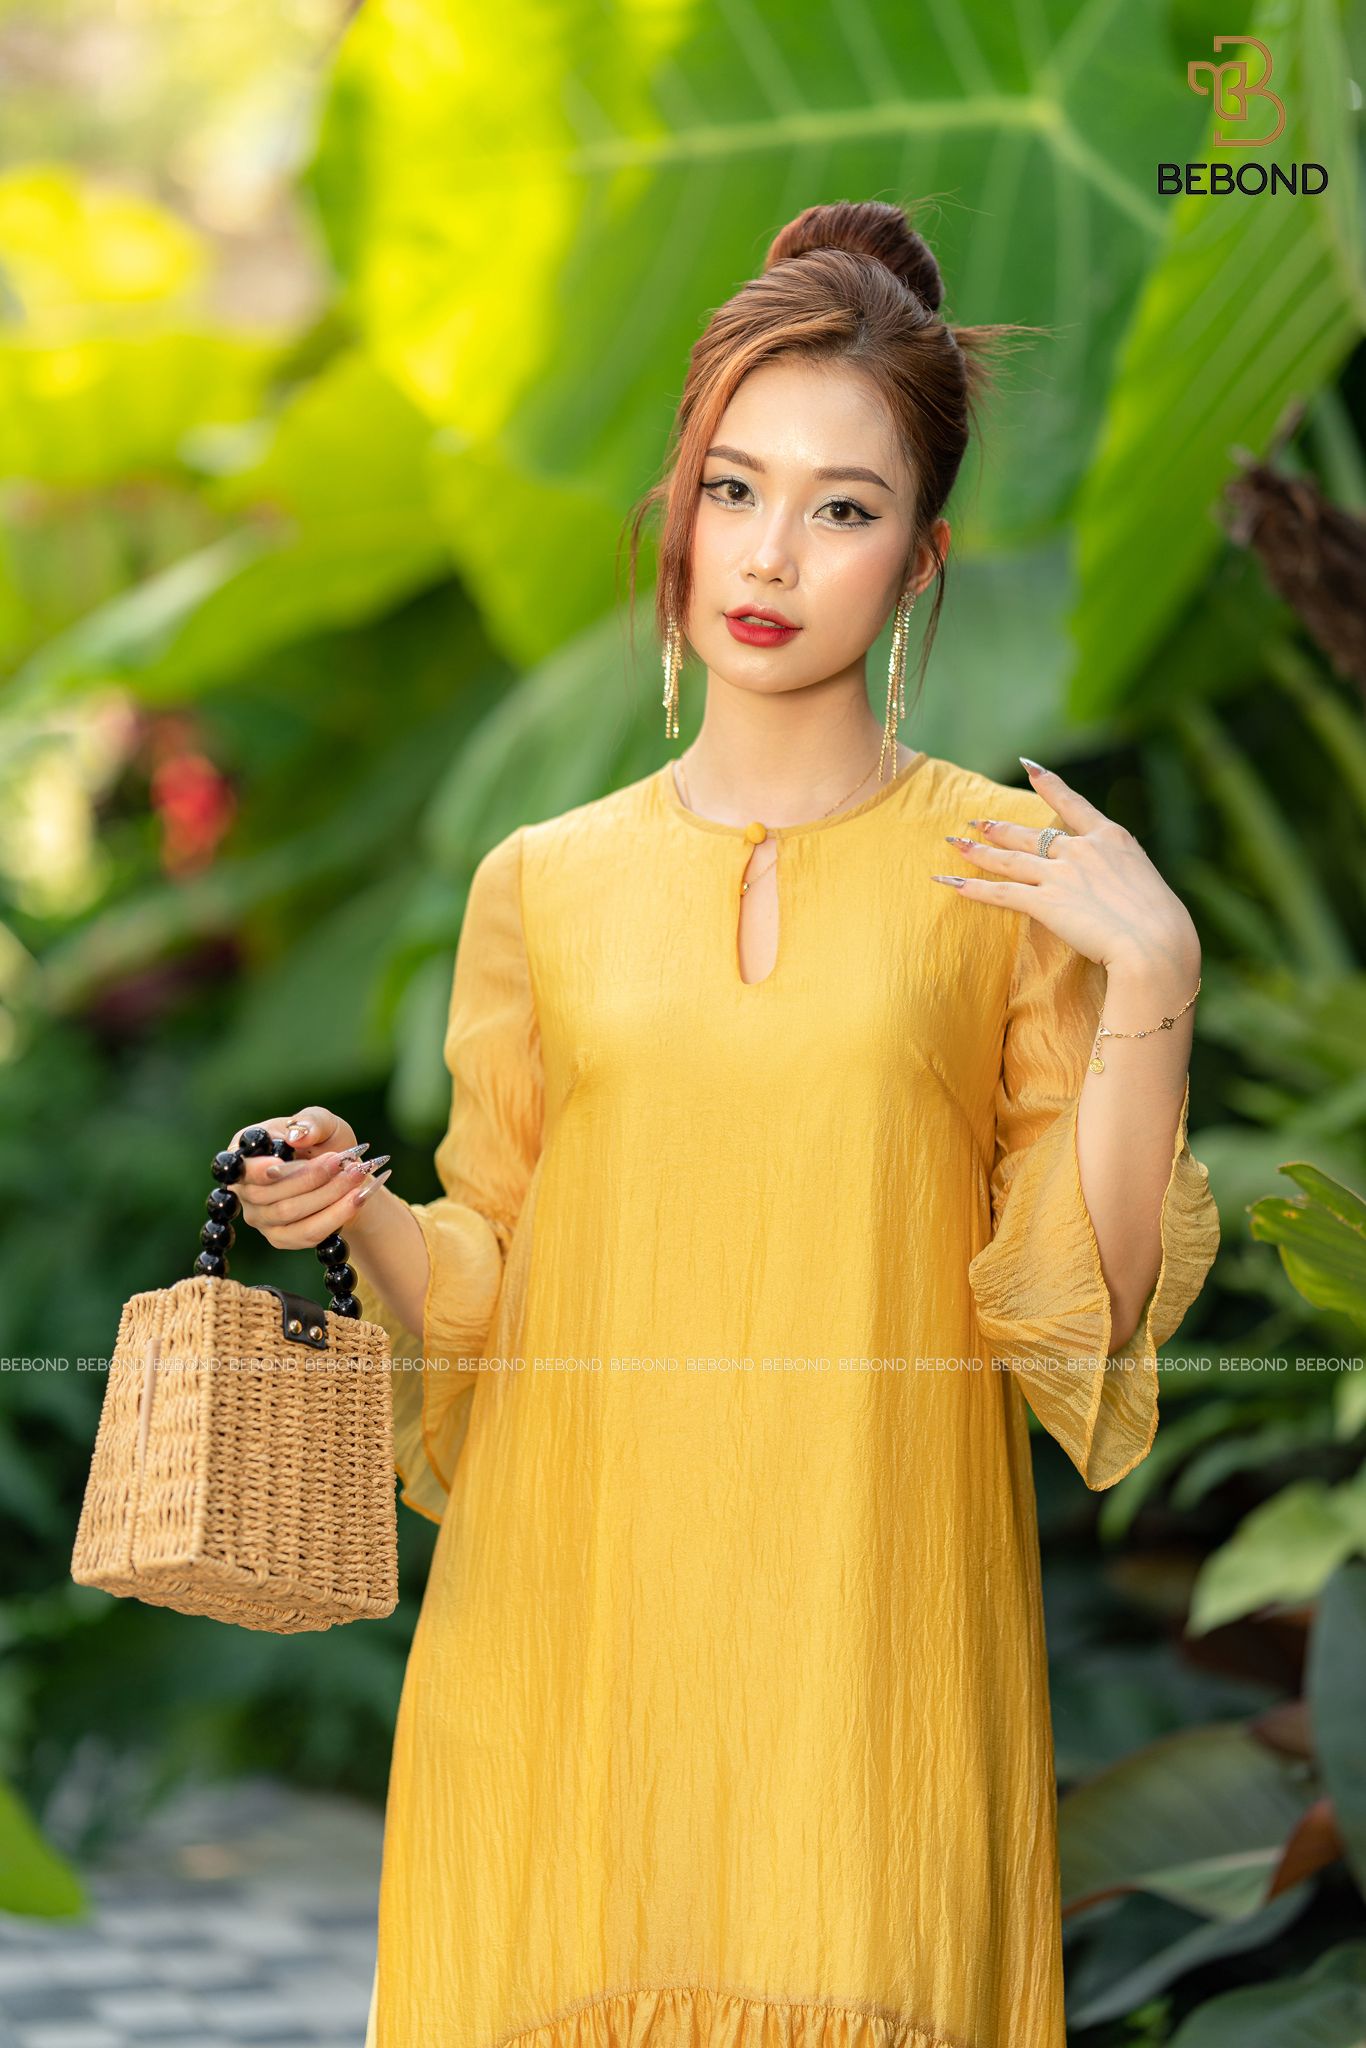 ĐẦM SUÔNG BÈO CHÂN MÀU VÀNG- VIVIAN DRESS